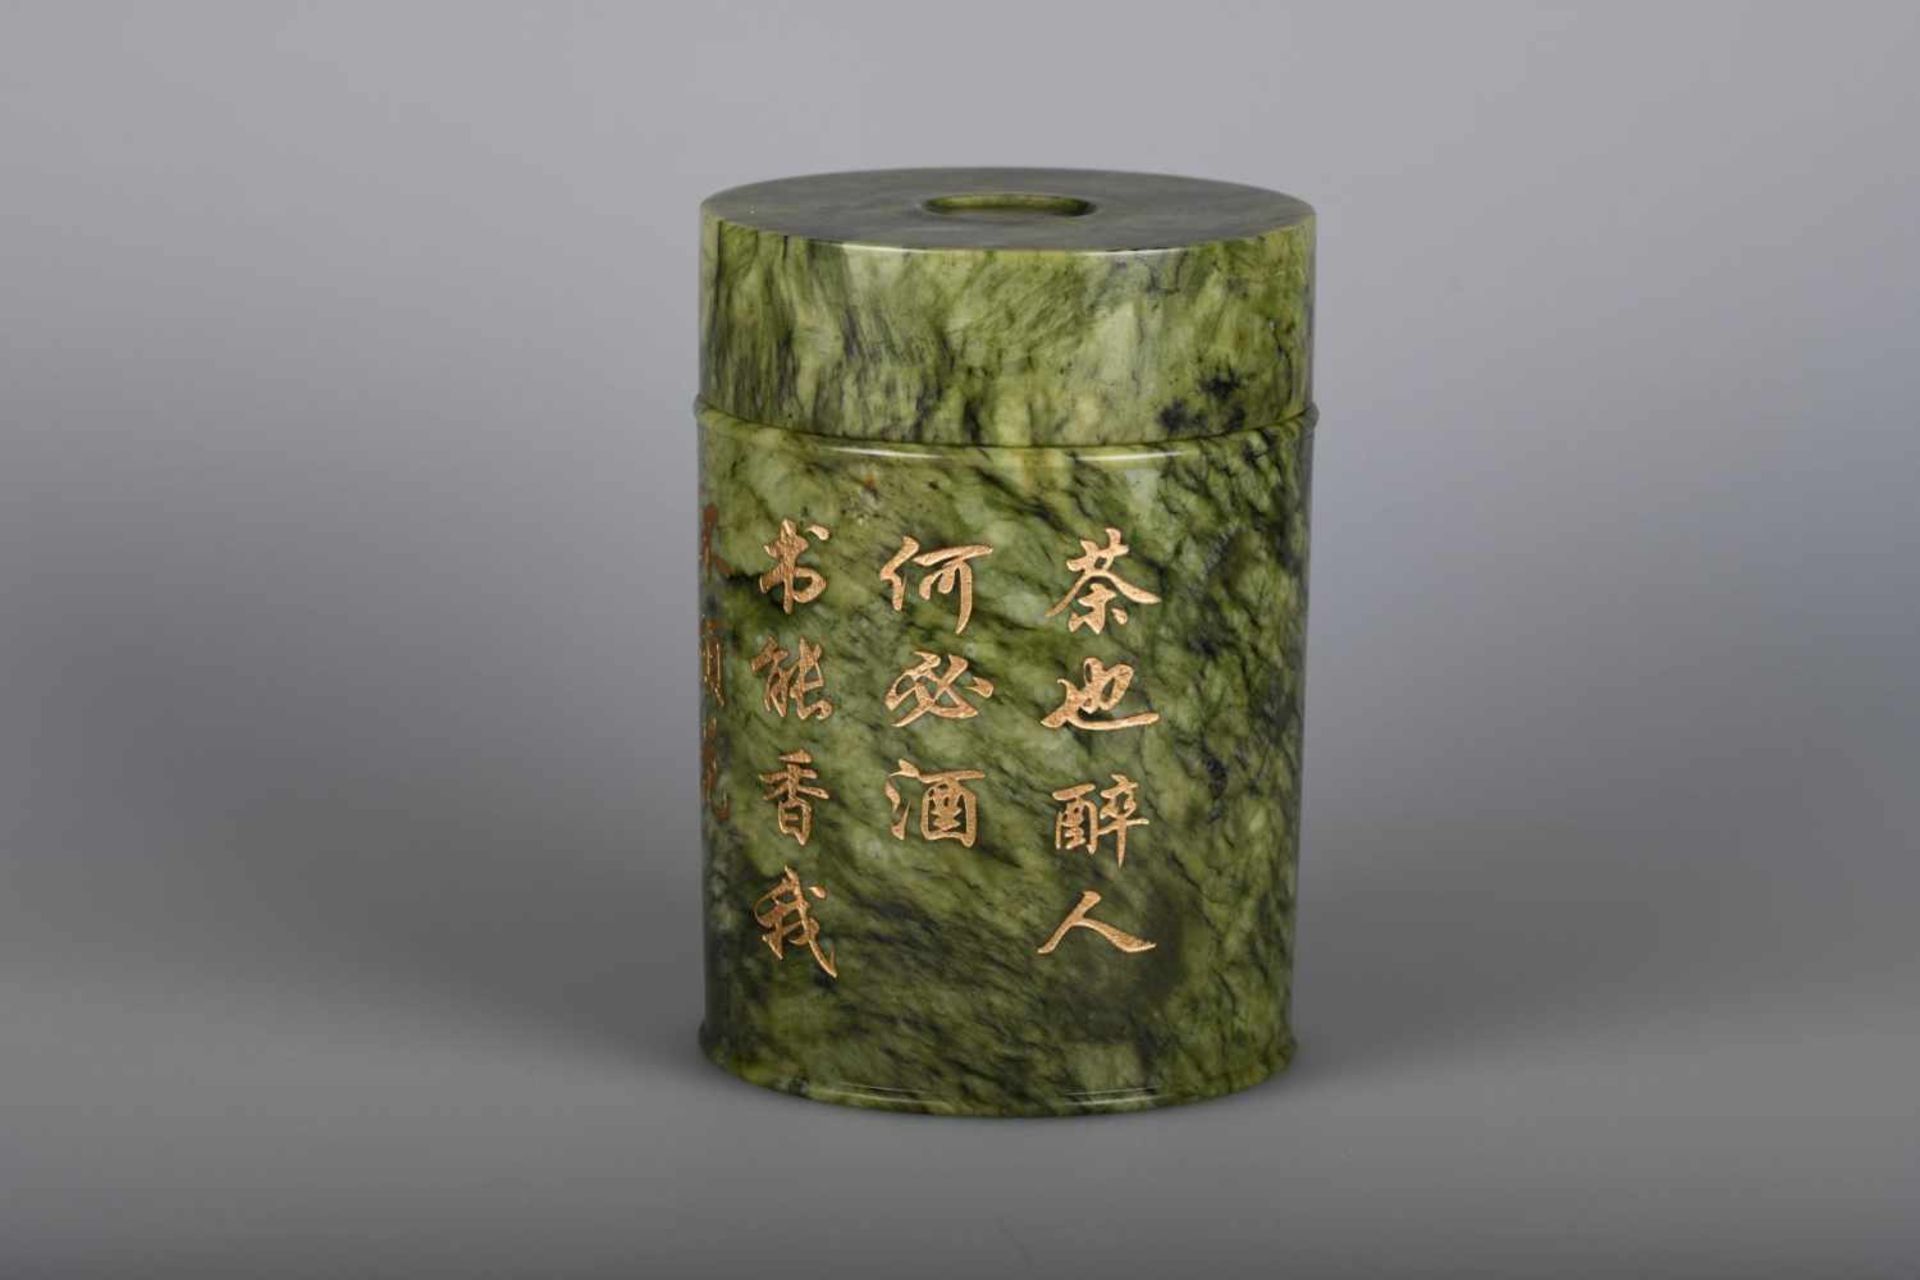 Großes Jade - Deckelgefäß, ChinaSog. Spinach-Jade, zylindrische Form mit glatten Wandungen und